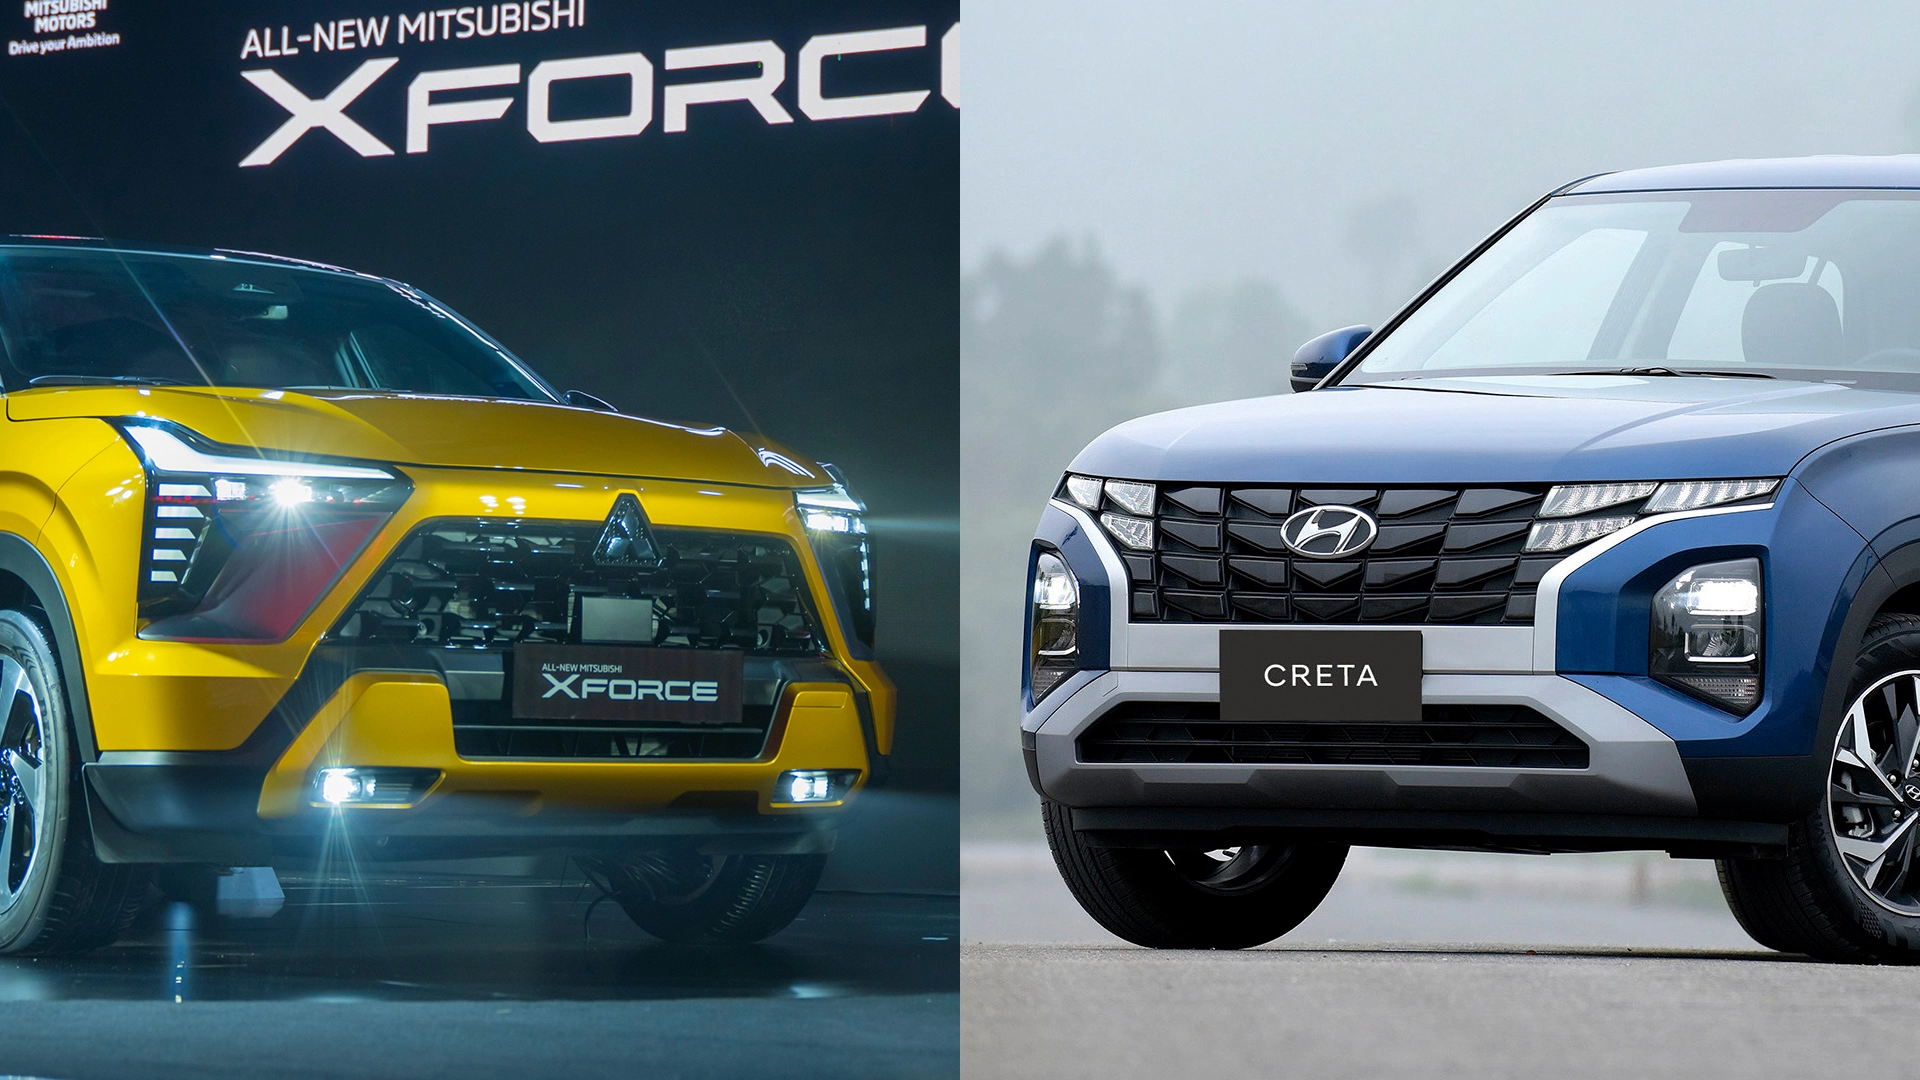 SUV tầm giá 700 triệu: Chọn Mitsubishi Xforce hay Hyundai Creta?